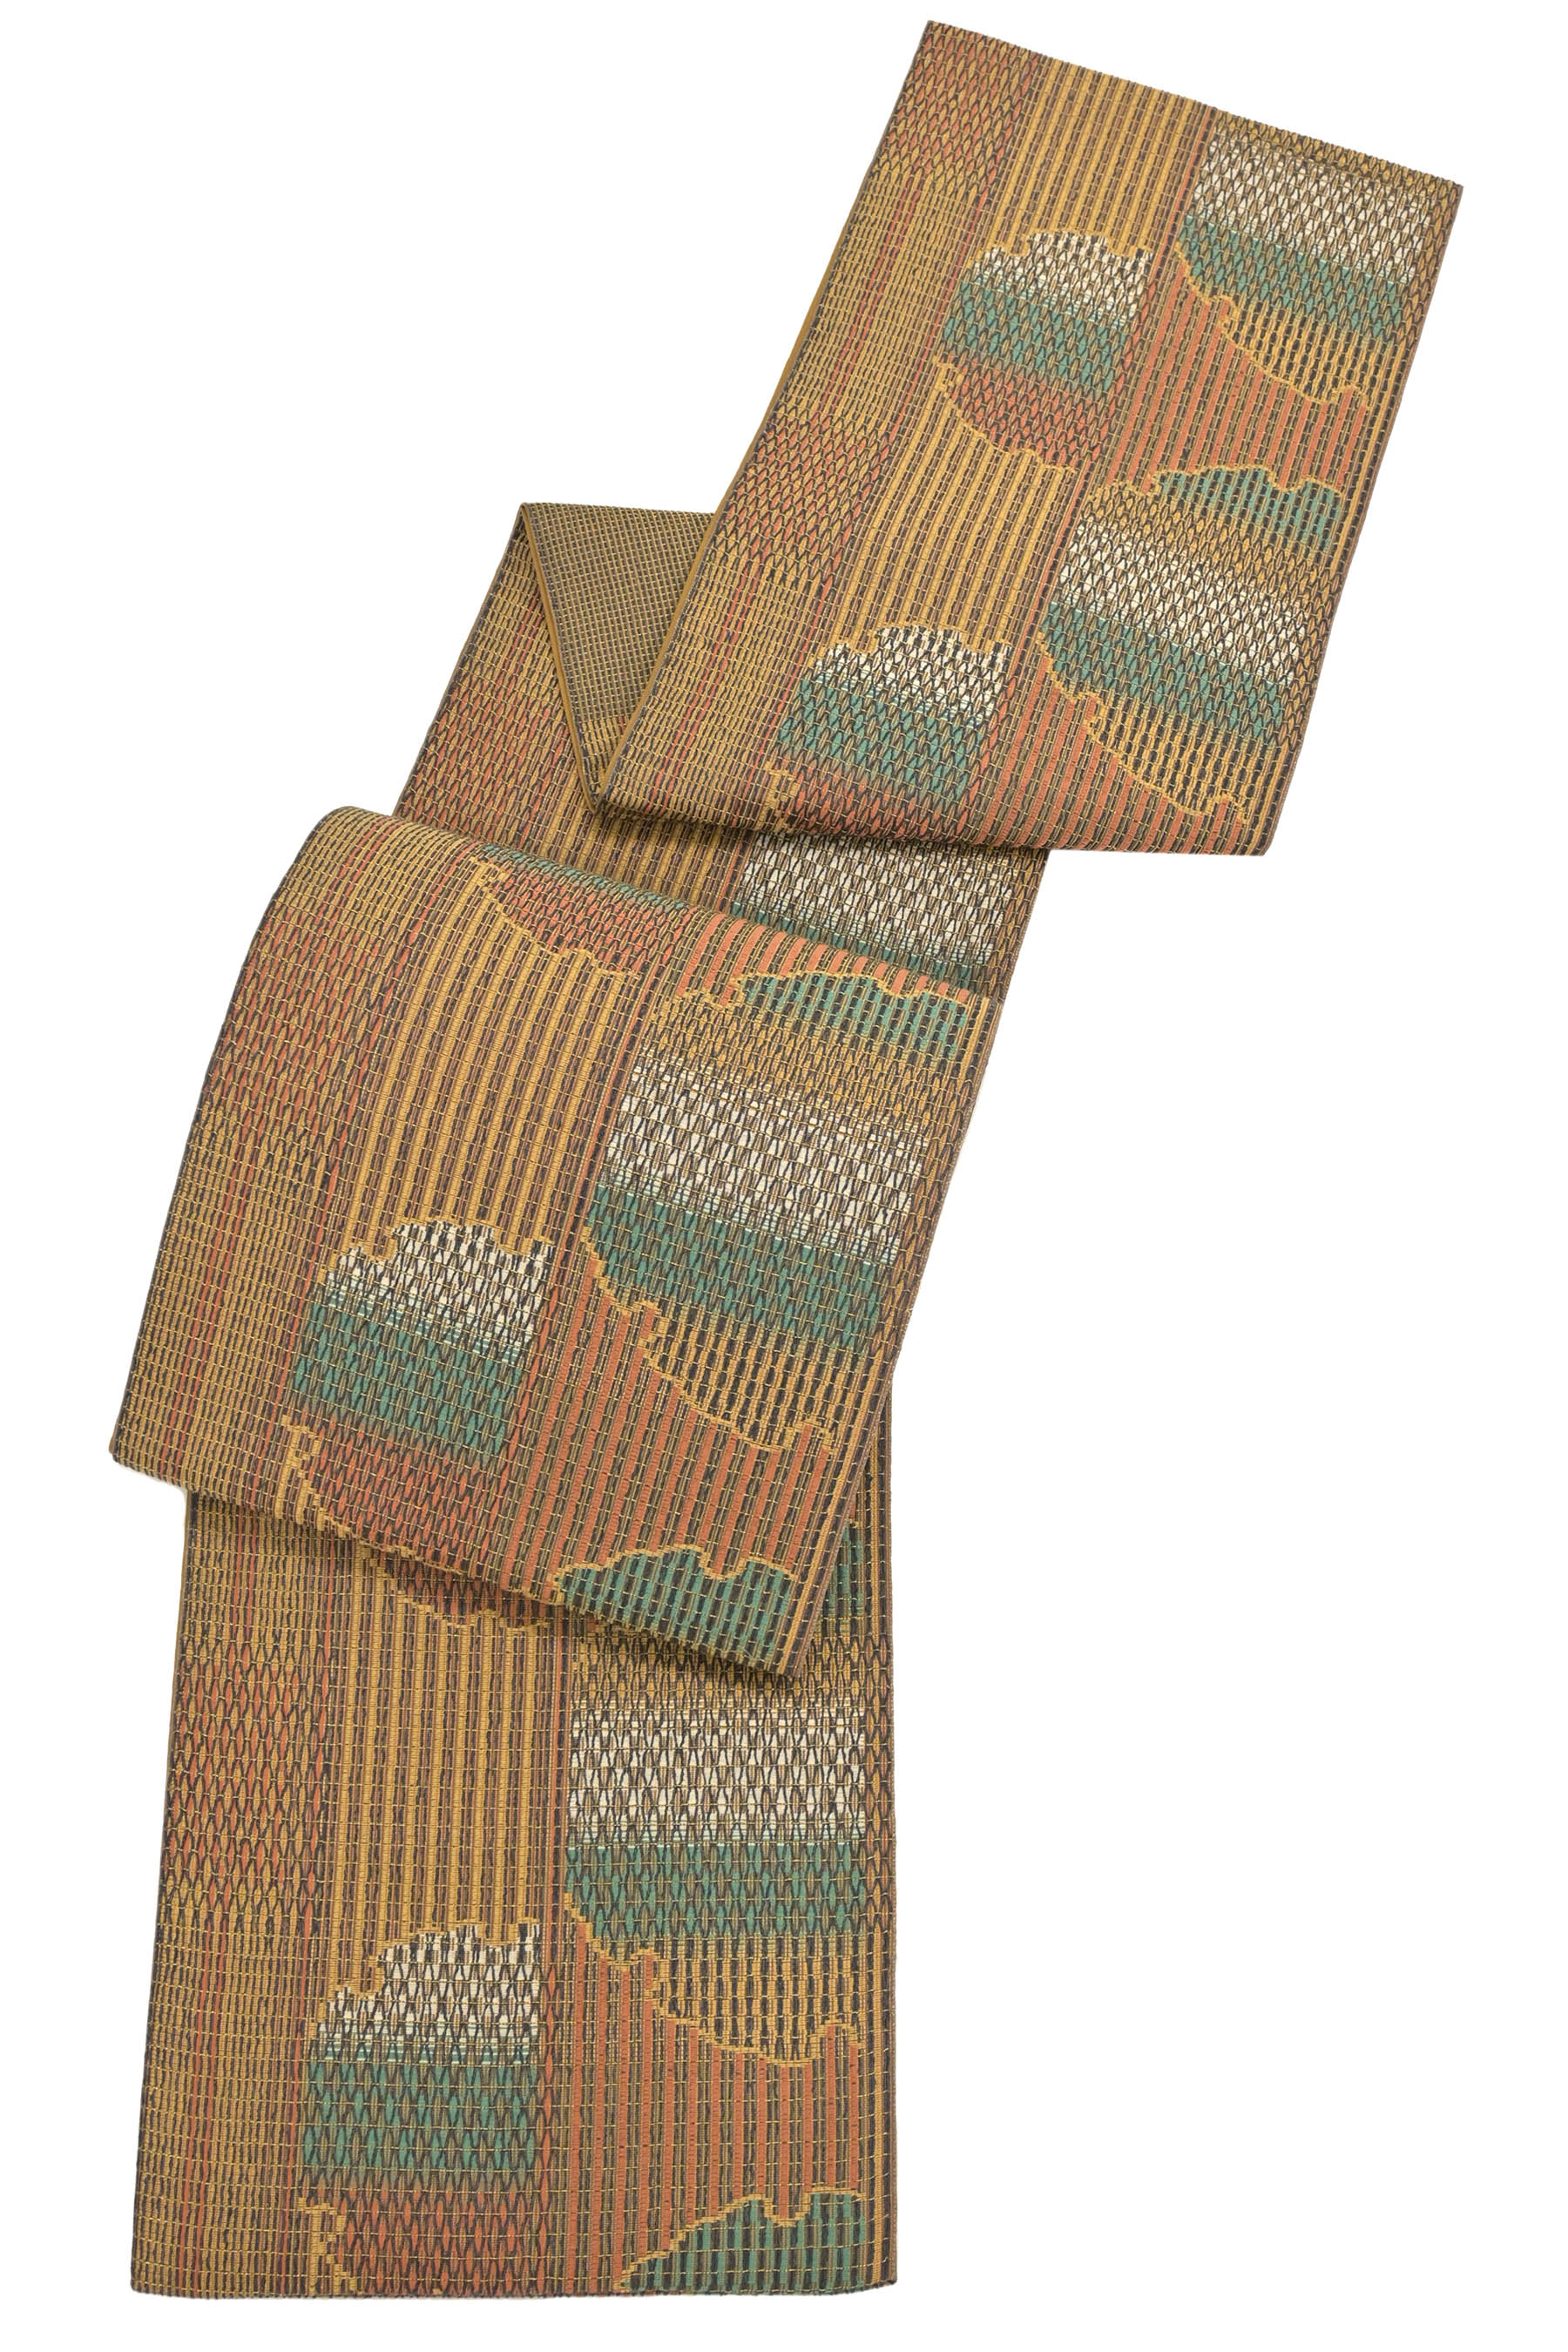 限定SALE大得価美品 六通袋帯 泥染め 紙布綟り 伝統工芸士 永野和年作 着物・浴衣